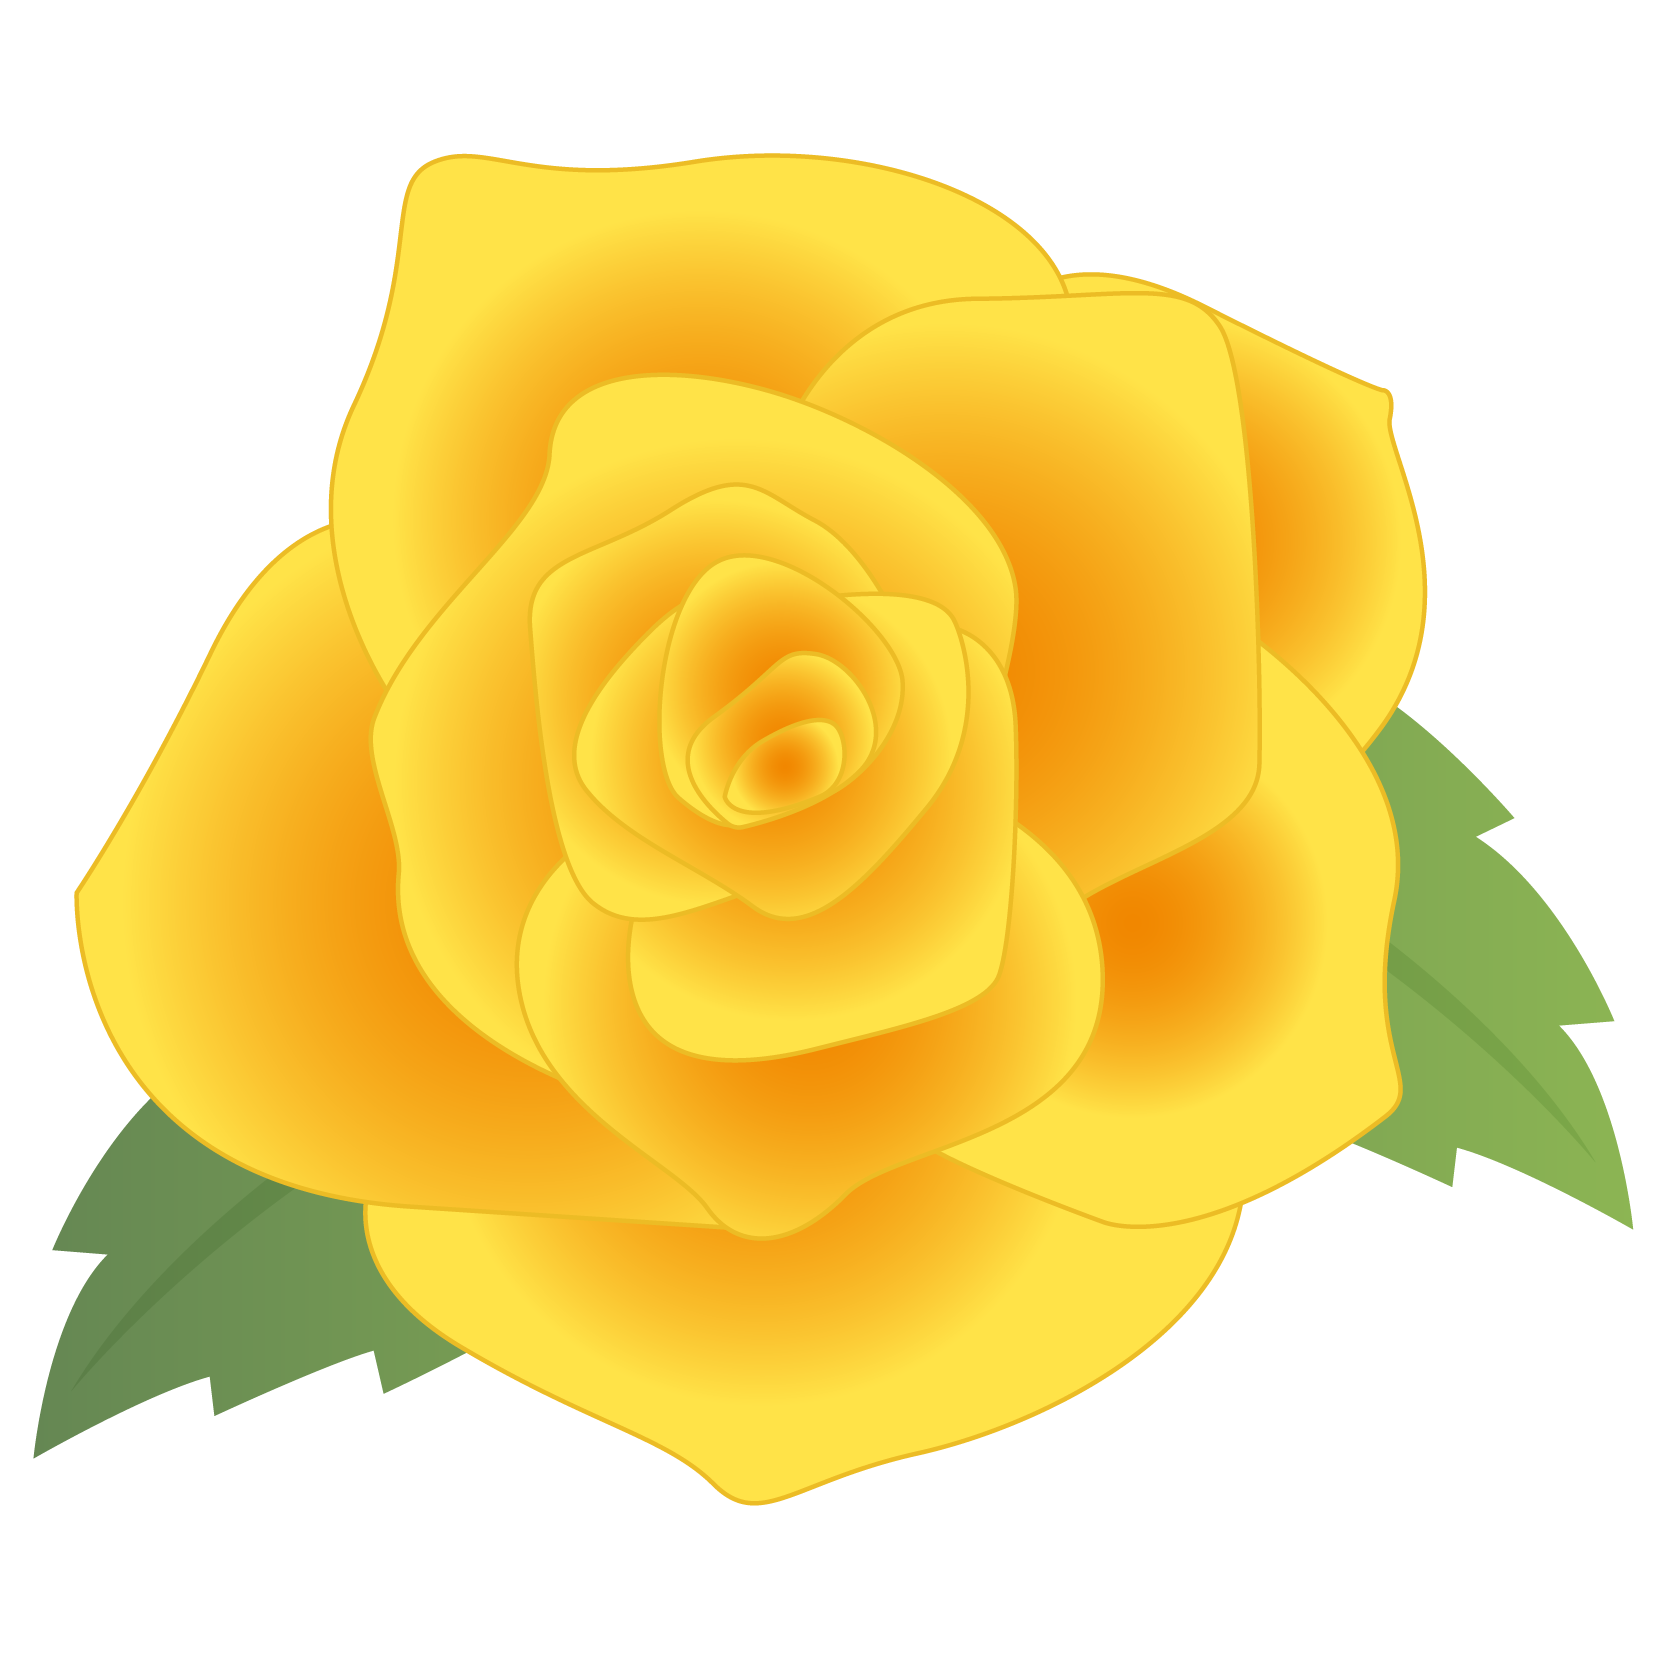 商用フリー 無料イラスト 黄色いバラの花 Rose03 商用ok フリー素材集 ナイスなイラスト